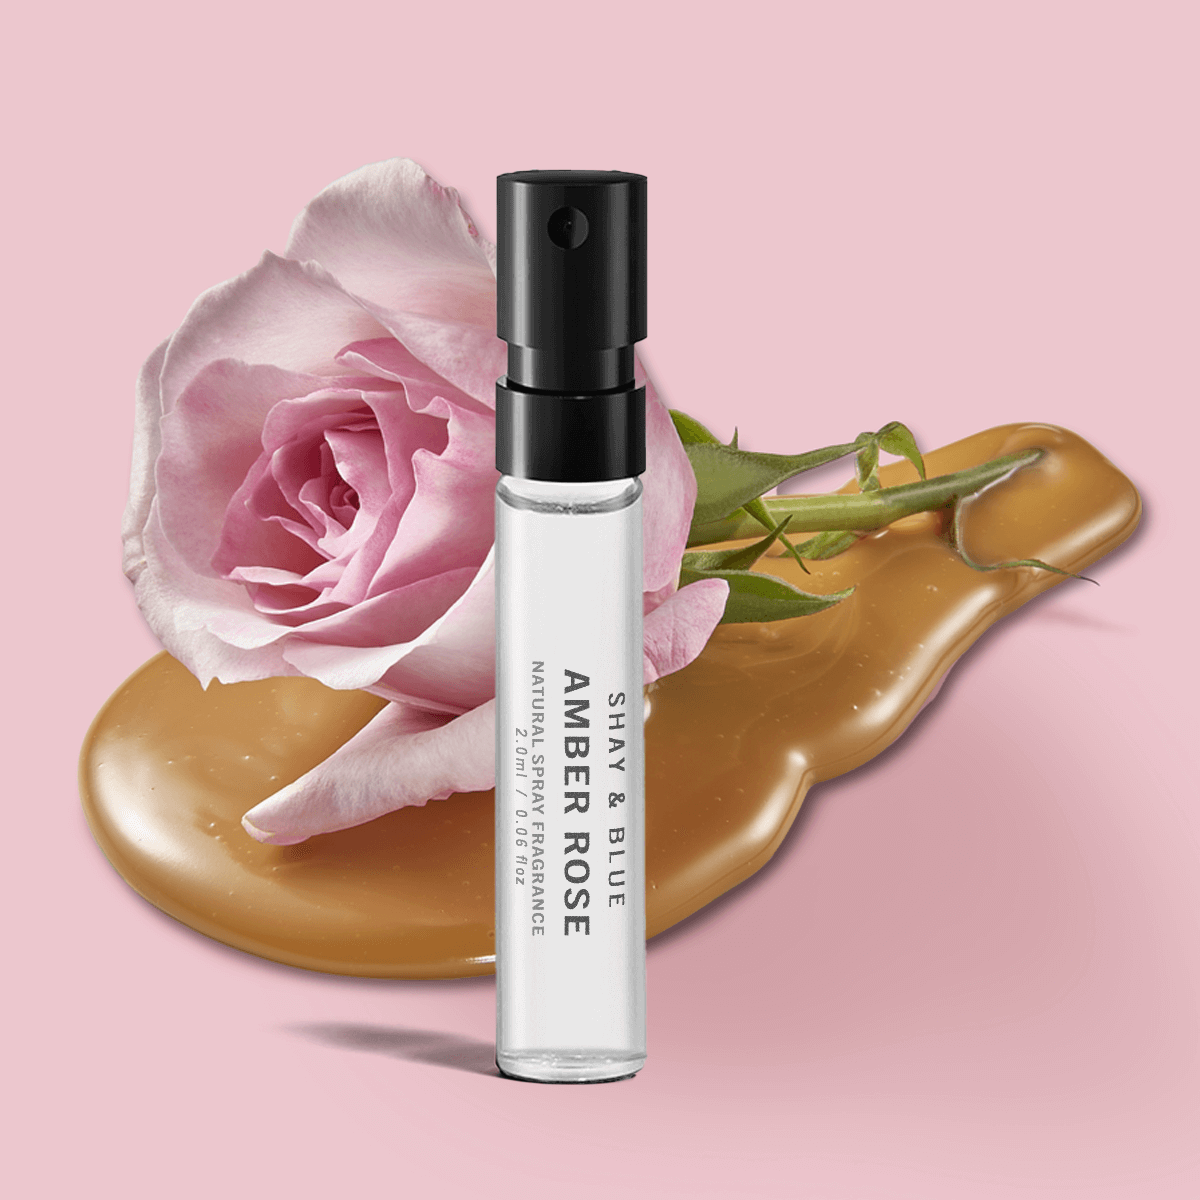 Amber Rose Fragrance 2ml | Nieuw seizoen meiroos is gemengd met witte amber en zoete romige noten. | Schone geur voor alle seksen | Shay & Blue